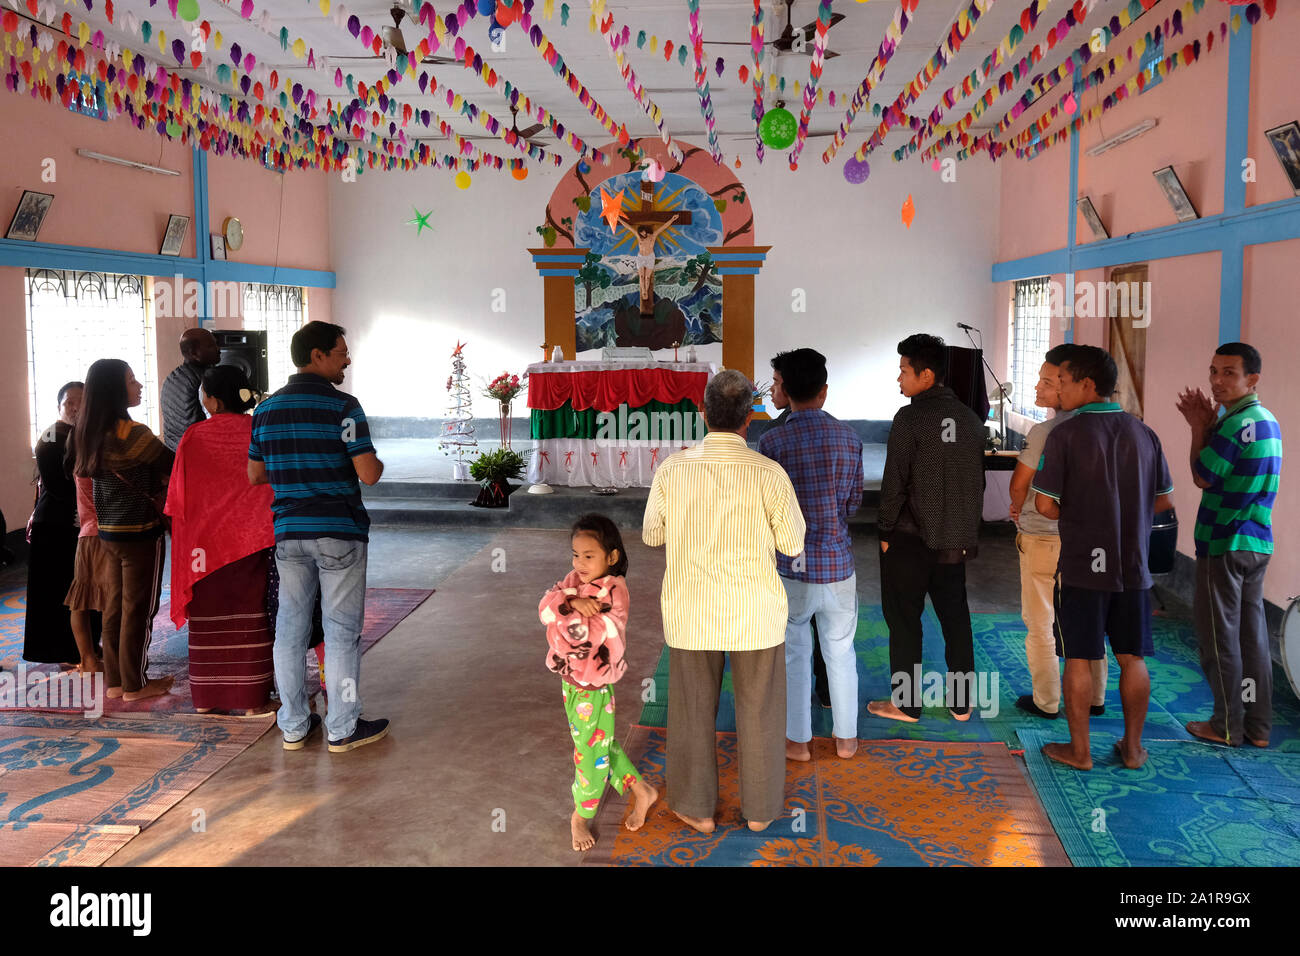 Gläubige Christen Gottesdienst in der katholischen St. Paul's Kirche im Dorf Kachuchera, Bundesstaat Manipur im Nordosten Indiens. Stockfoto